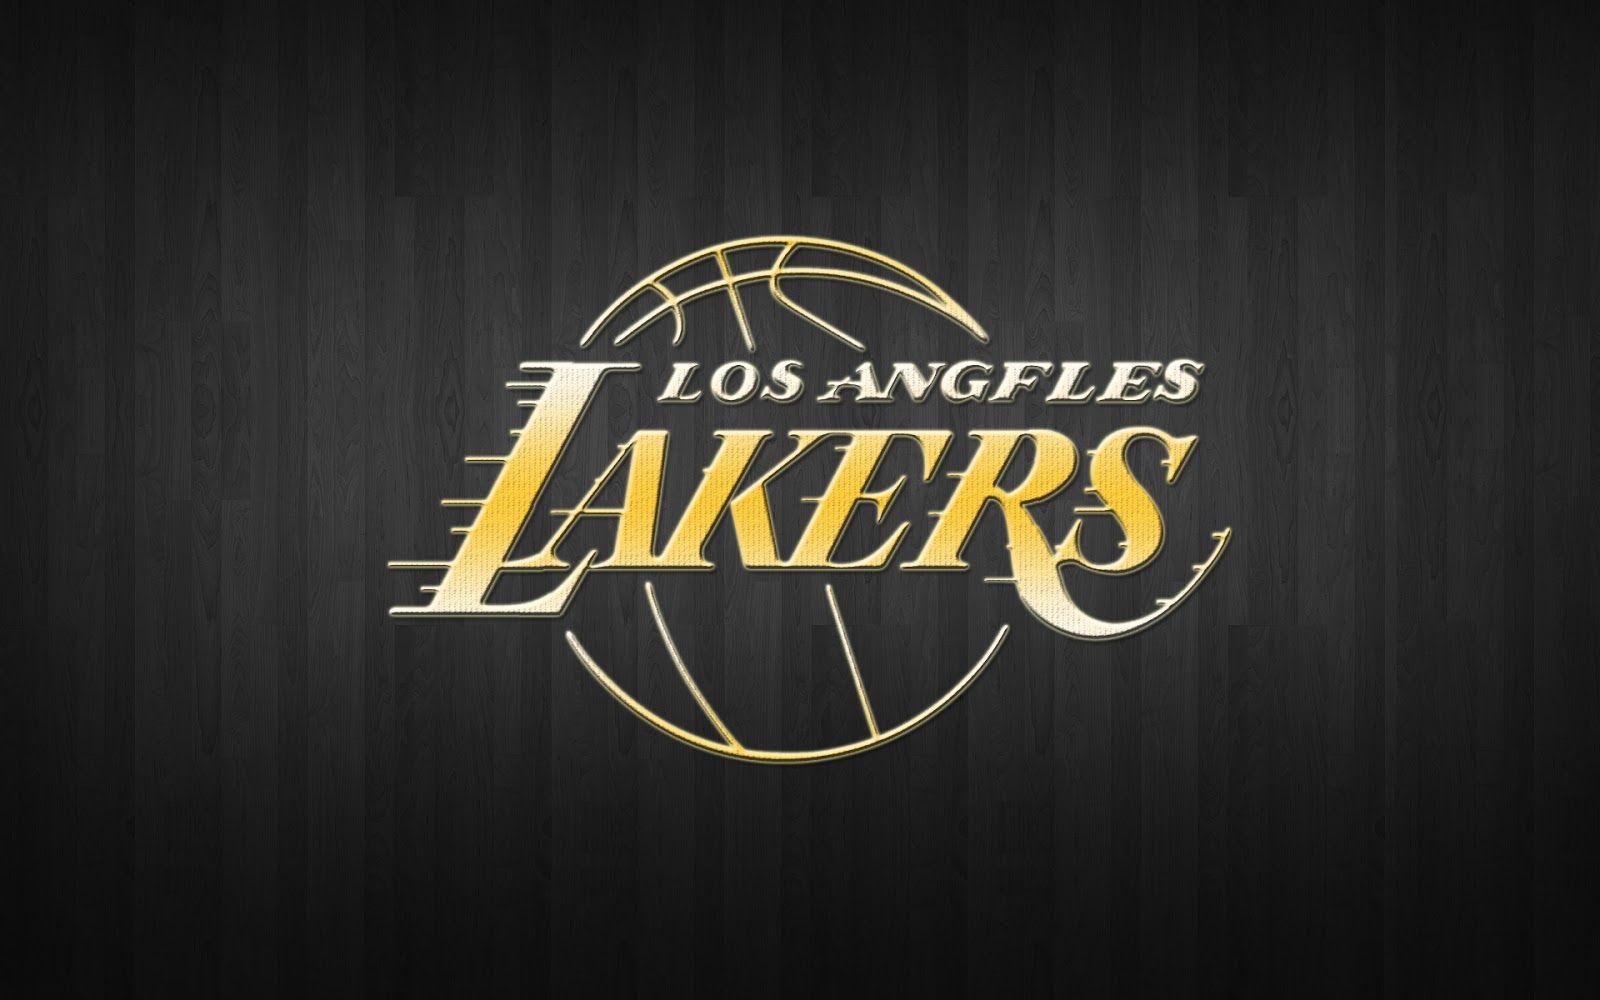 LA Lakers Wallpapers - Top Free LA